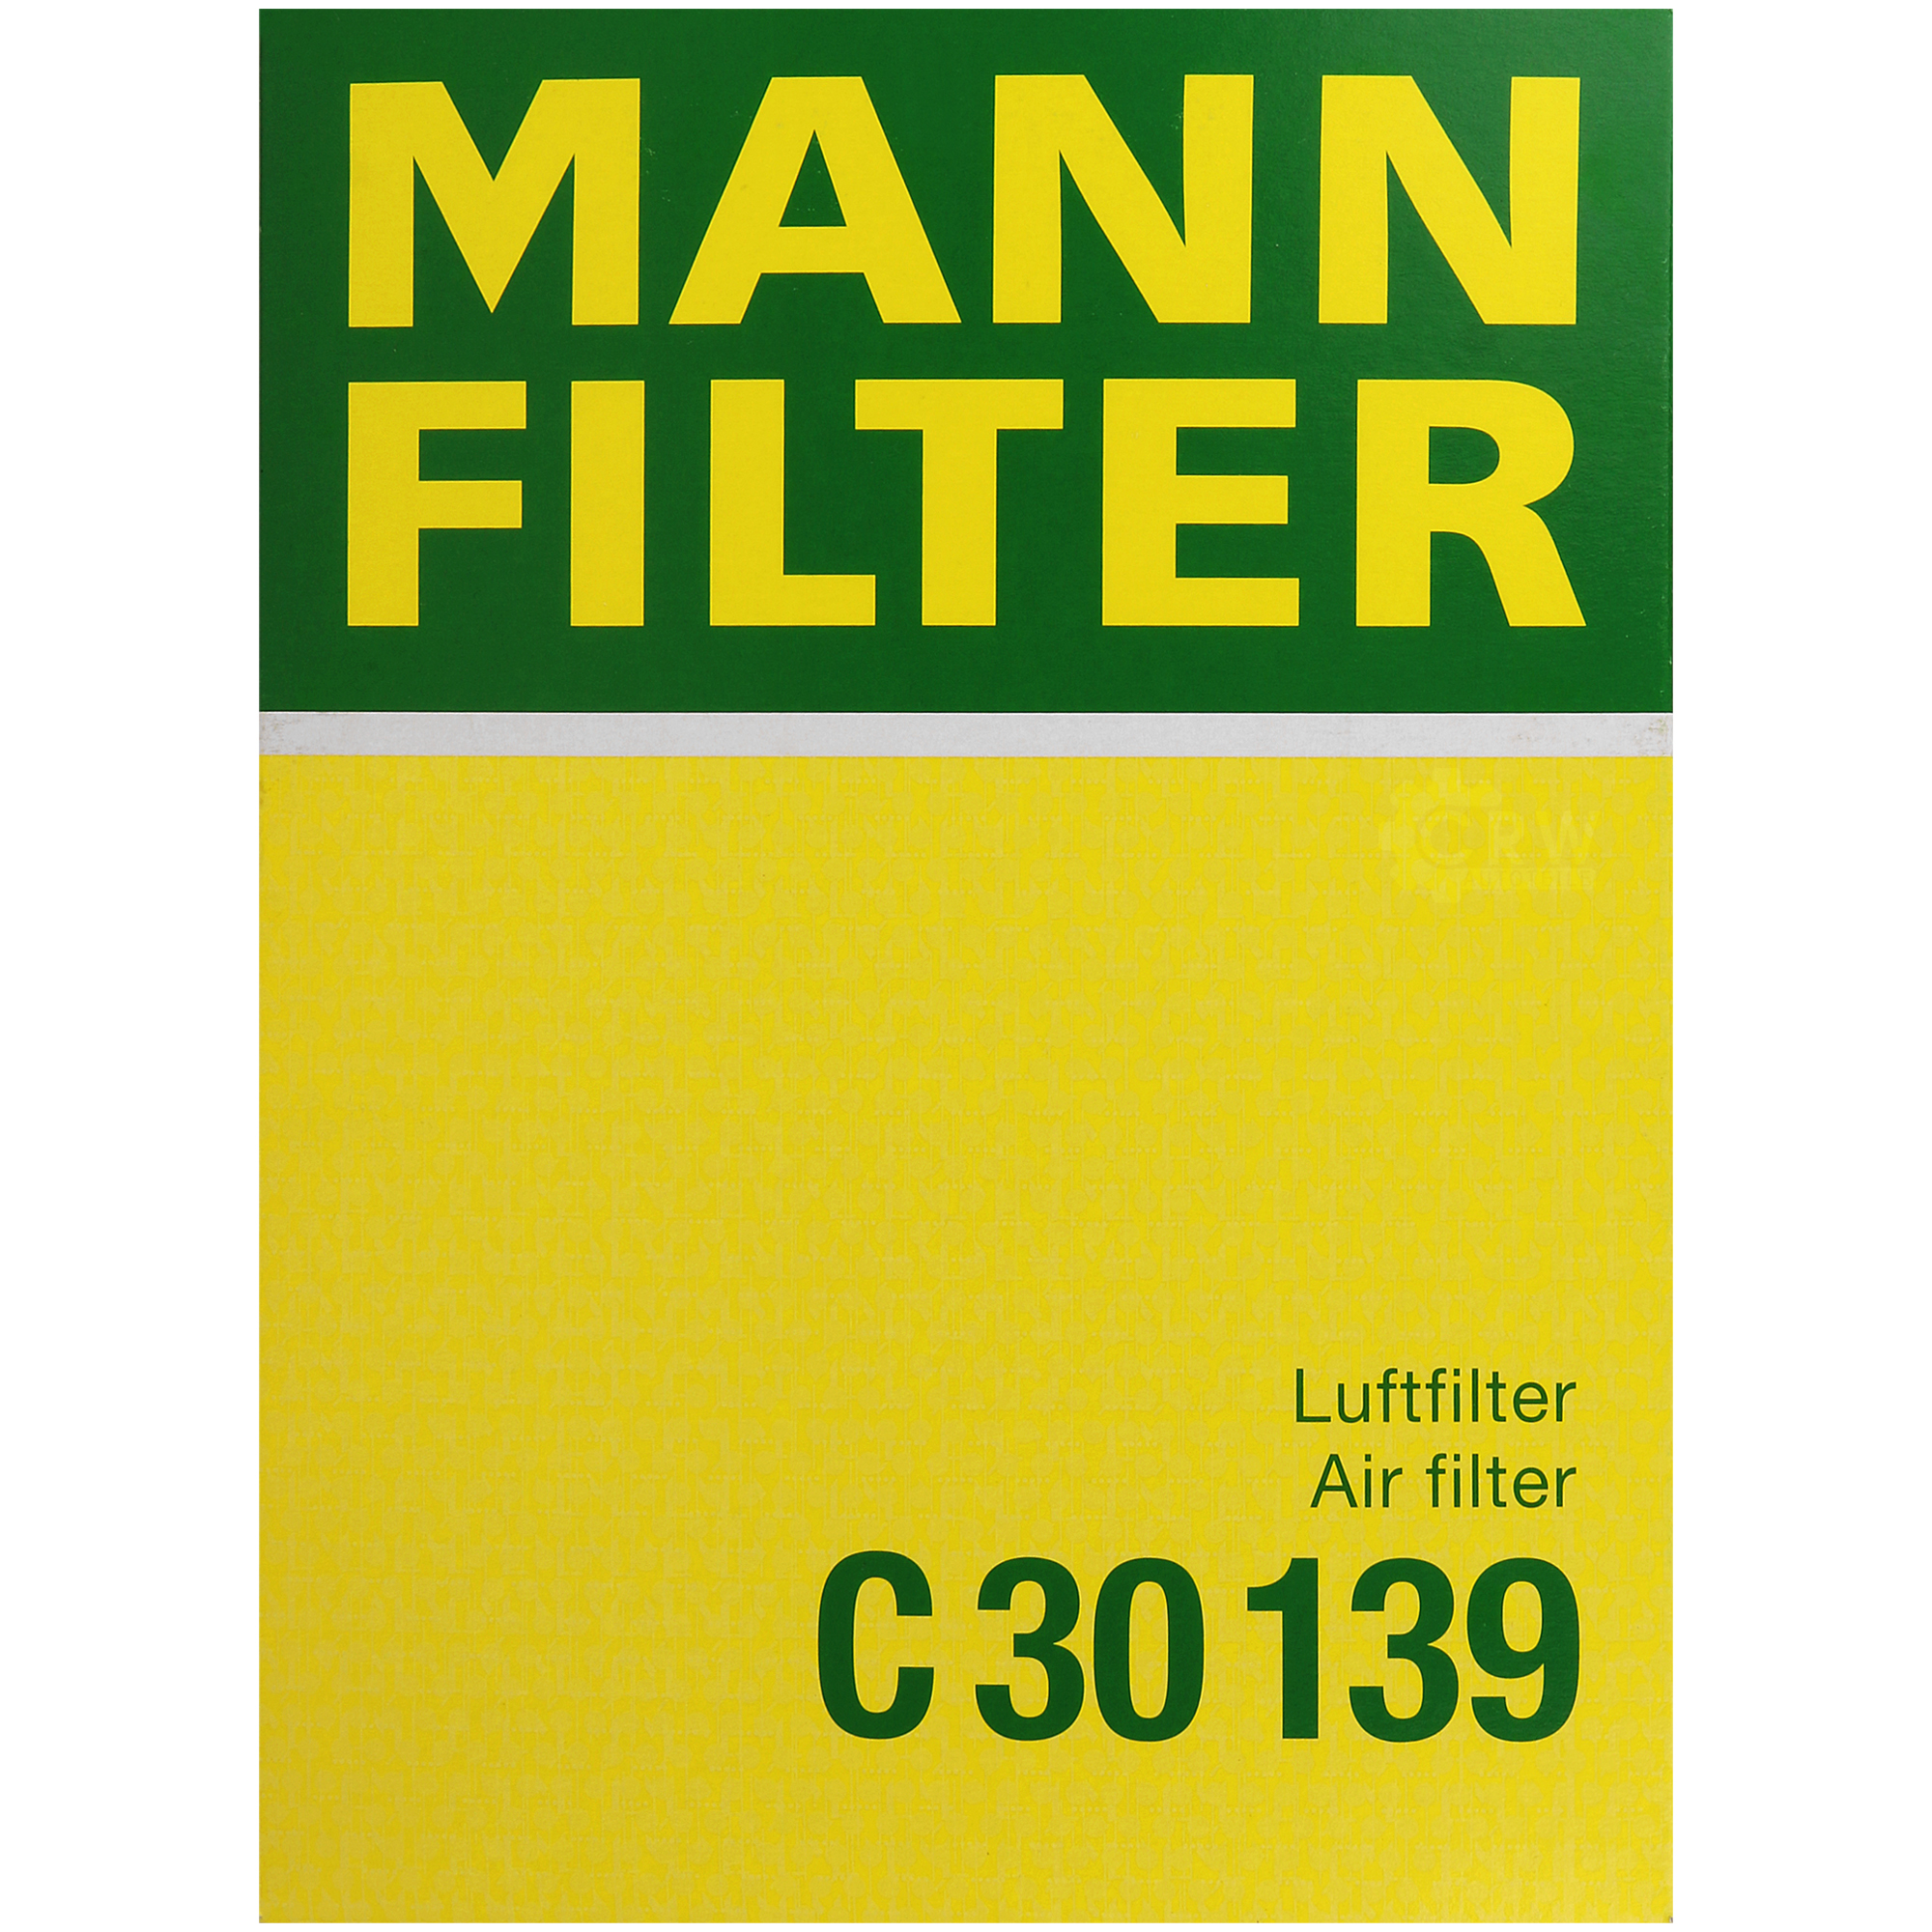 MANN-FILTER Luftfilter für BMW 5er E60 520i 523i E61 525i E64 630i